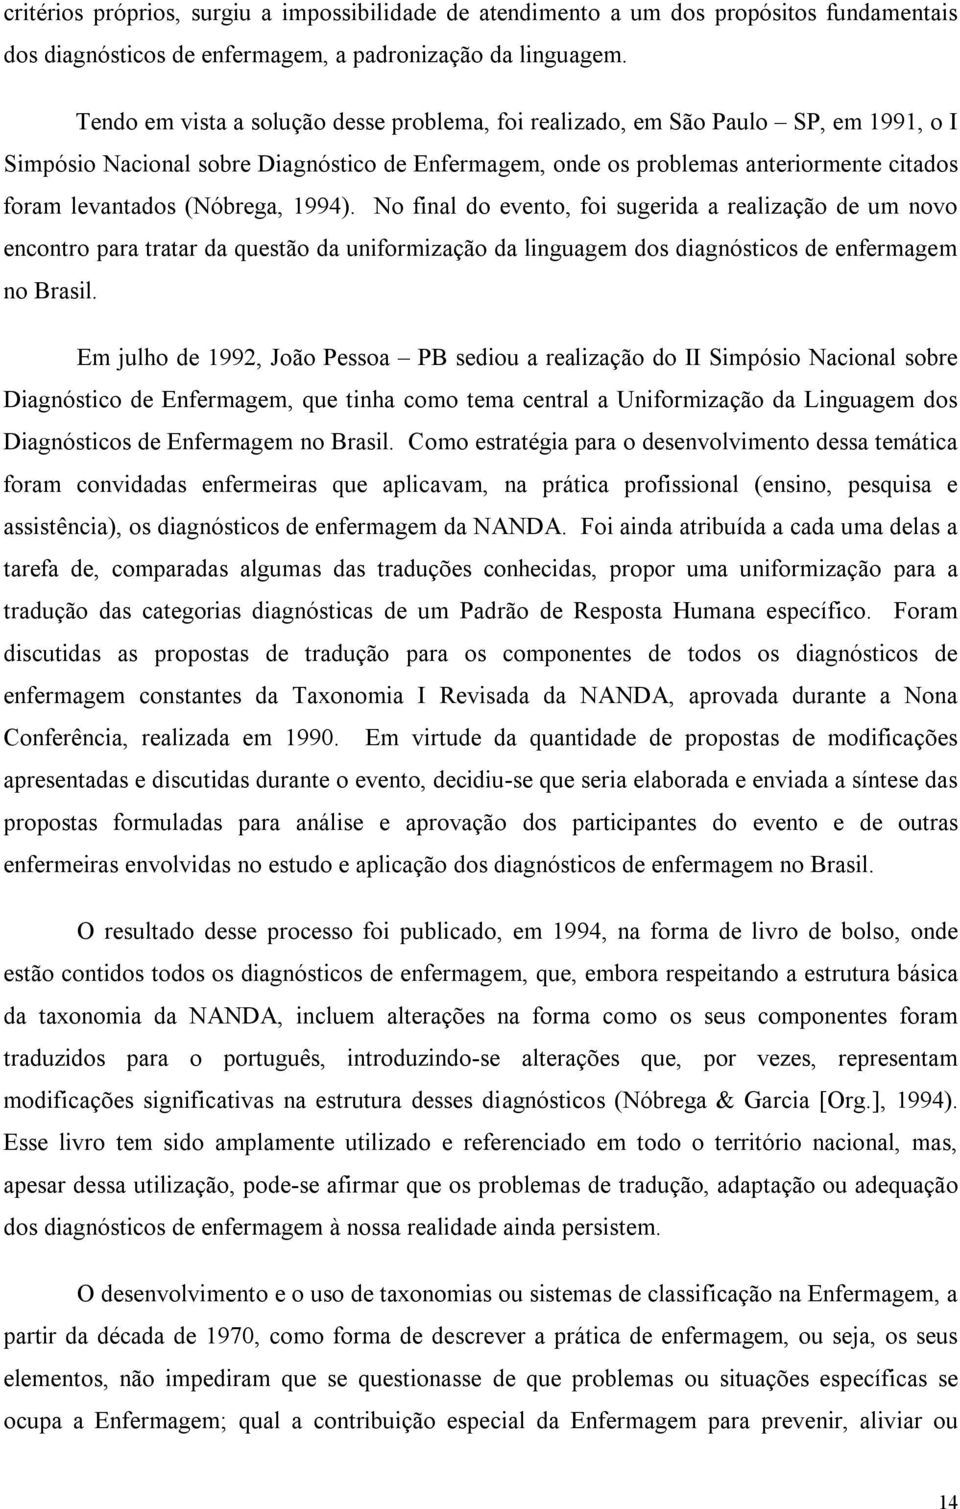 (Nóbrega, 1994). No final do evento, foi sugerida a realização de um novo encontro para tratar da questão da uniformização da linguagem dos diagnósticos de enfermagem no Brasil.